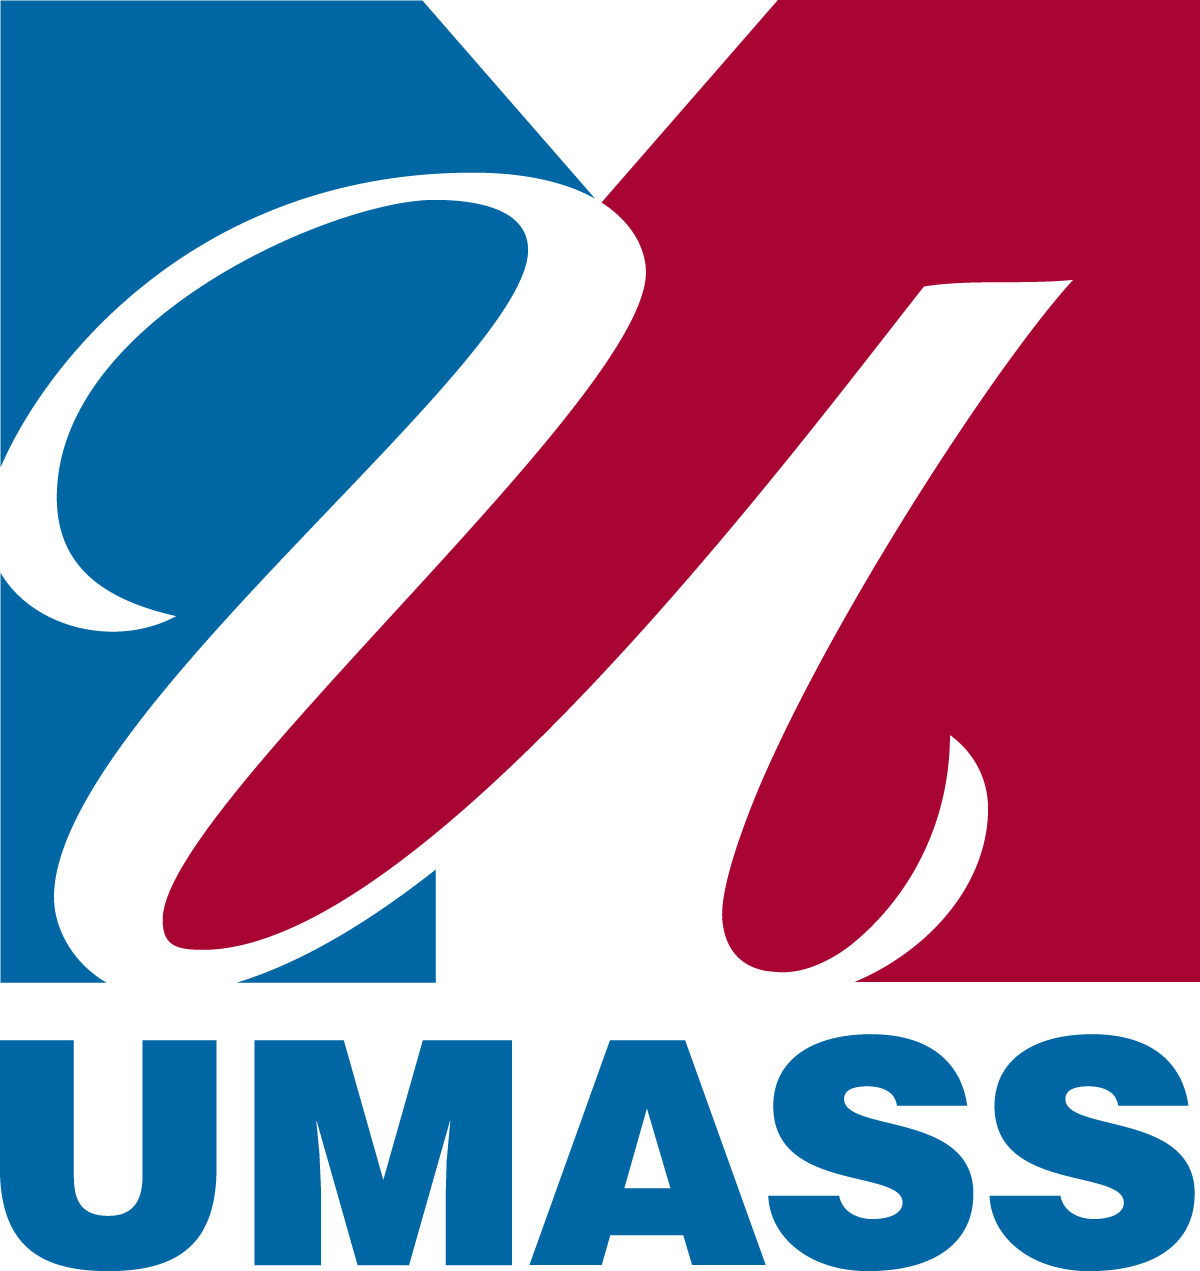 University of Massachusetts Logo - University of Massachusetts